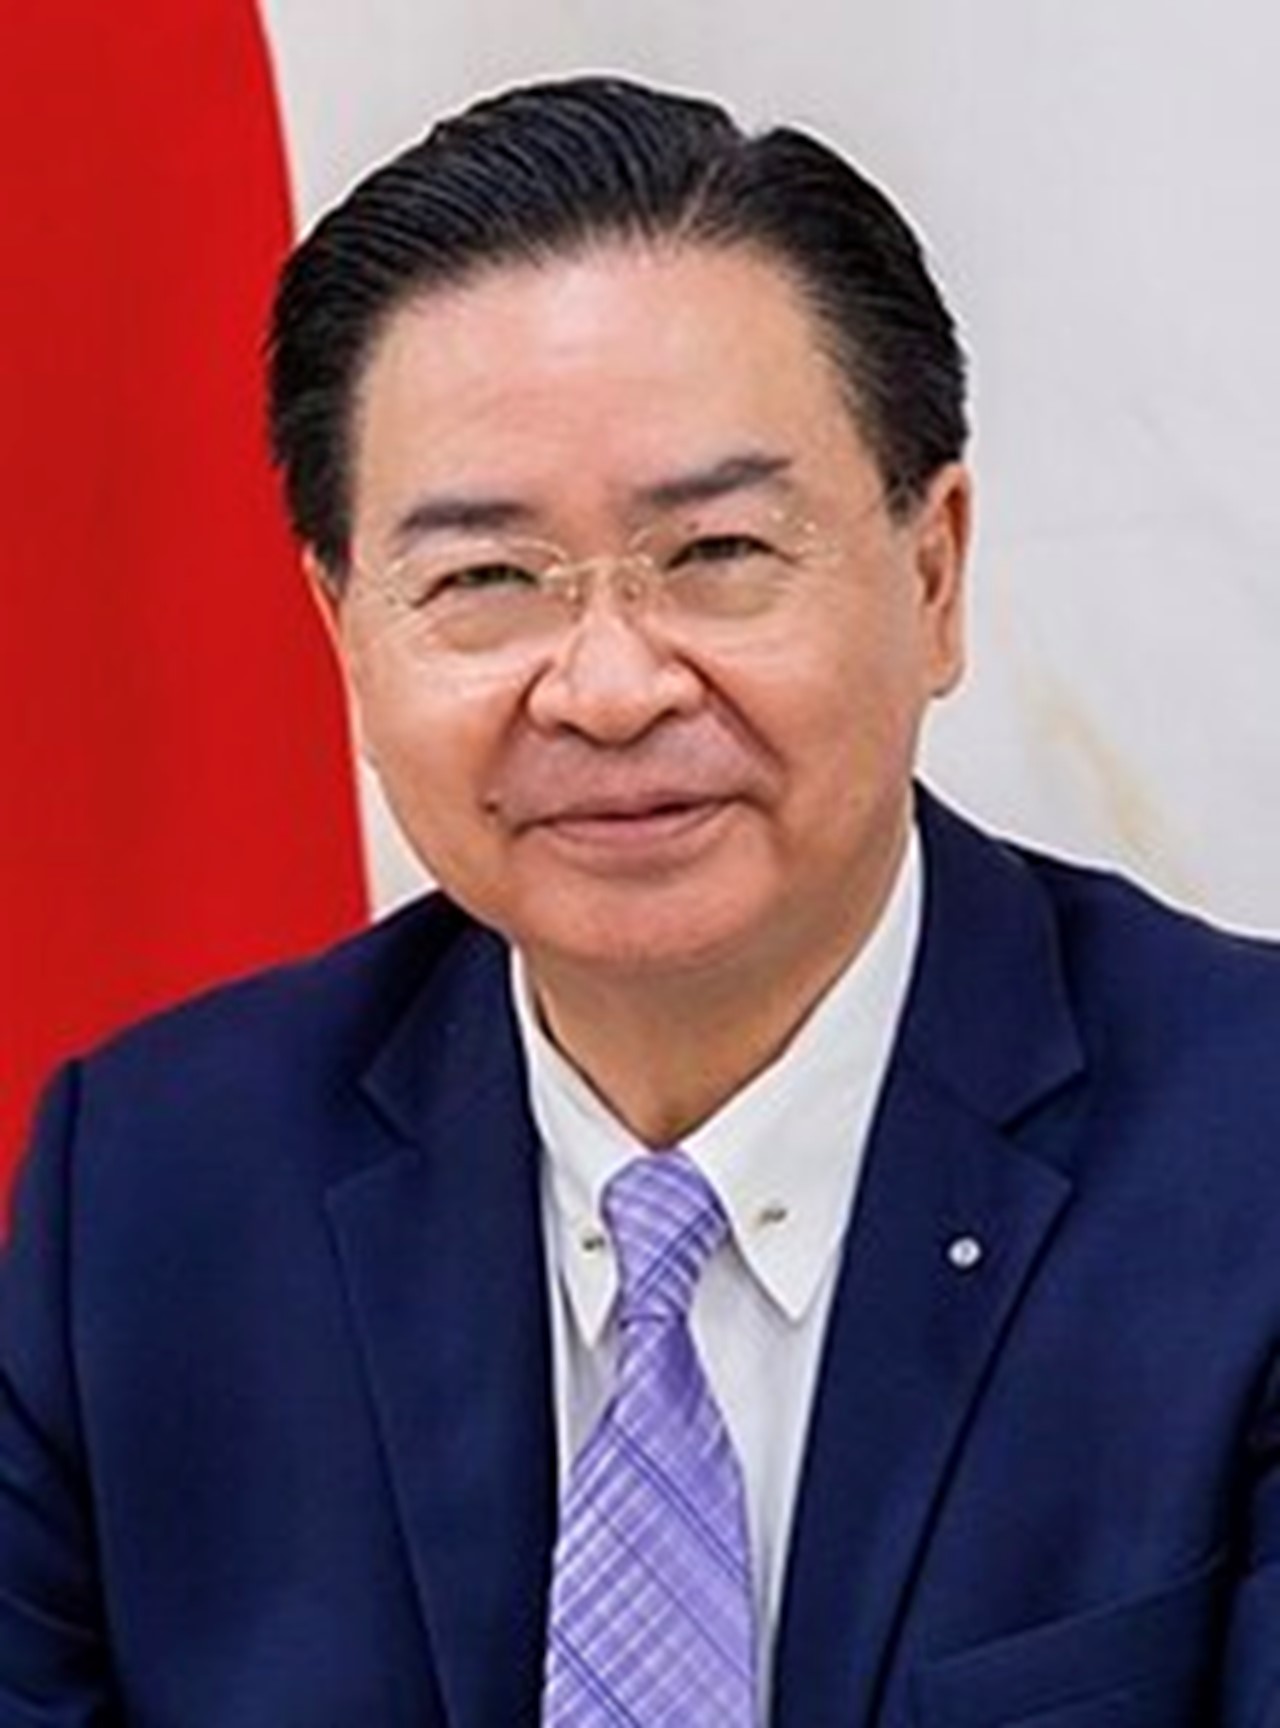 Les hostilités militaires chinoises contre Taïwan auront de graves répercussions mondiales (ministre taïwanais des Affaires étrangères WU)